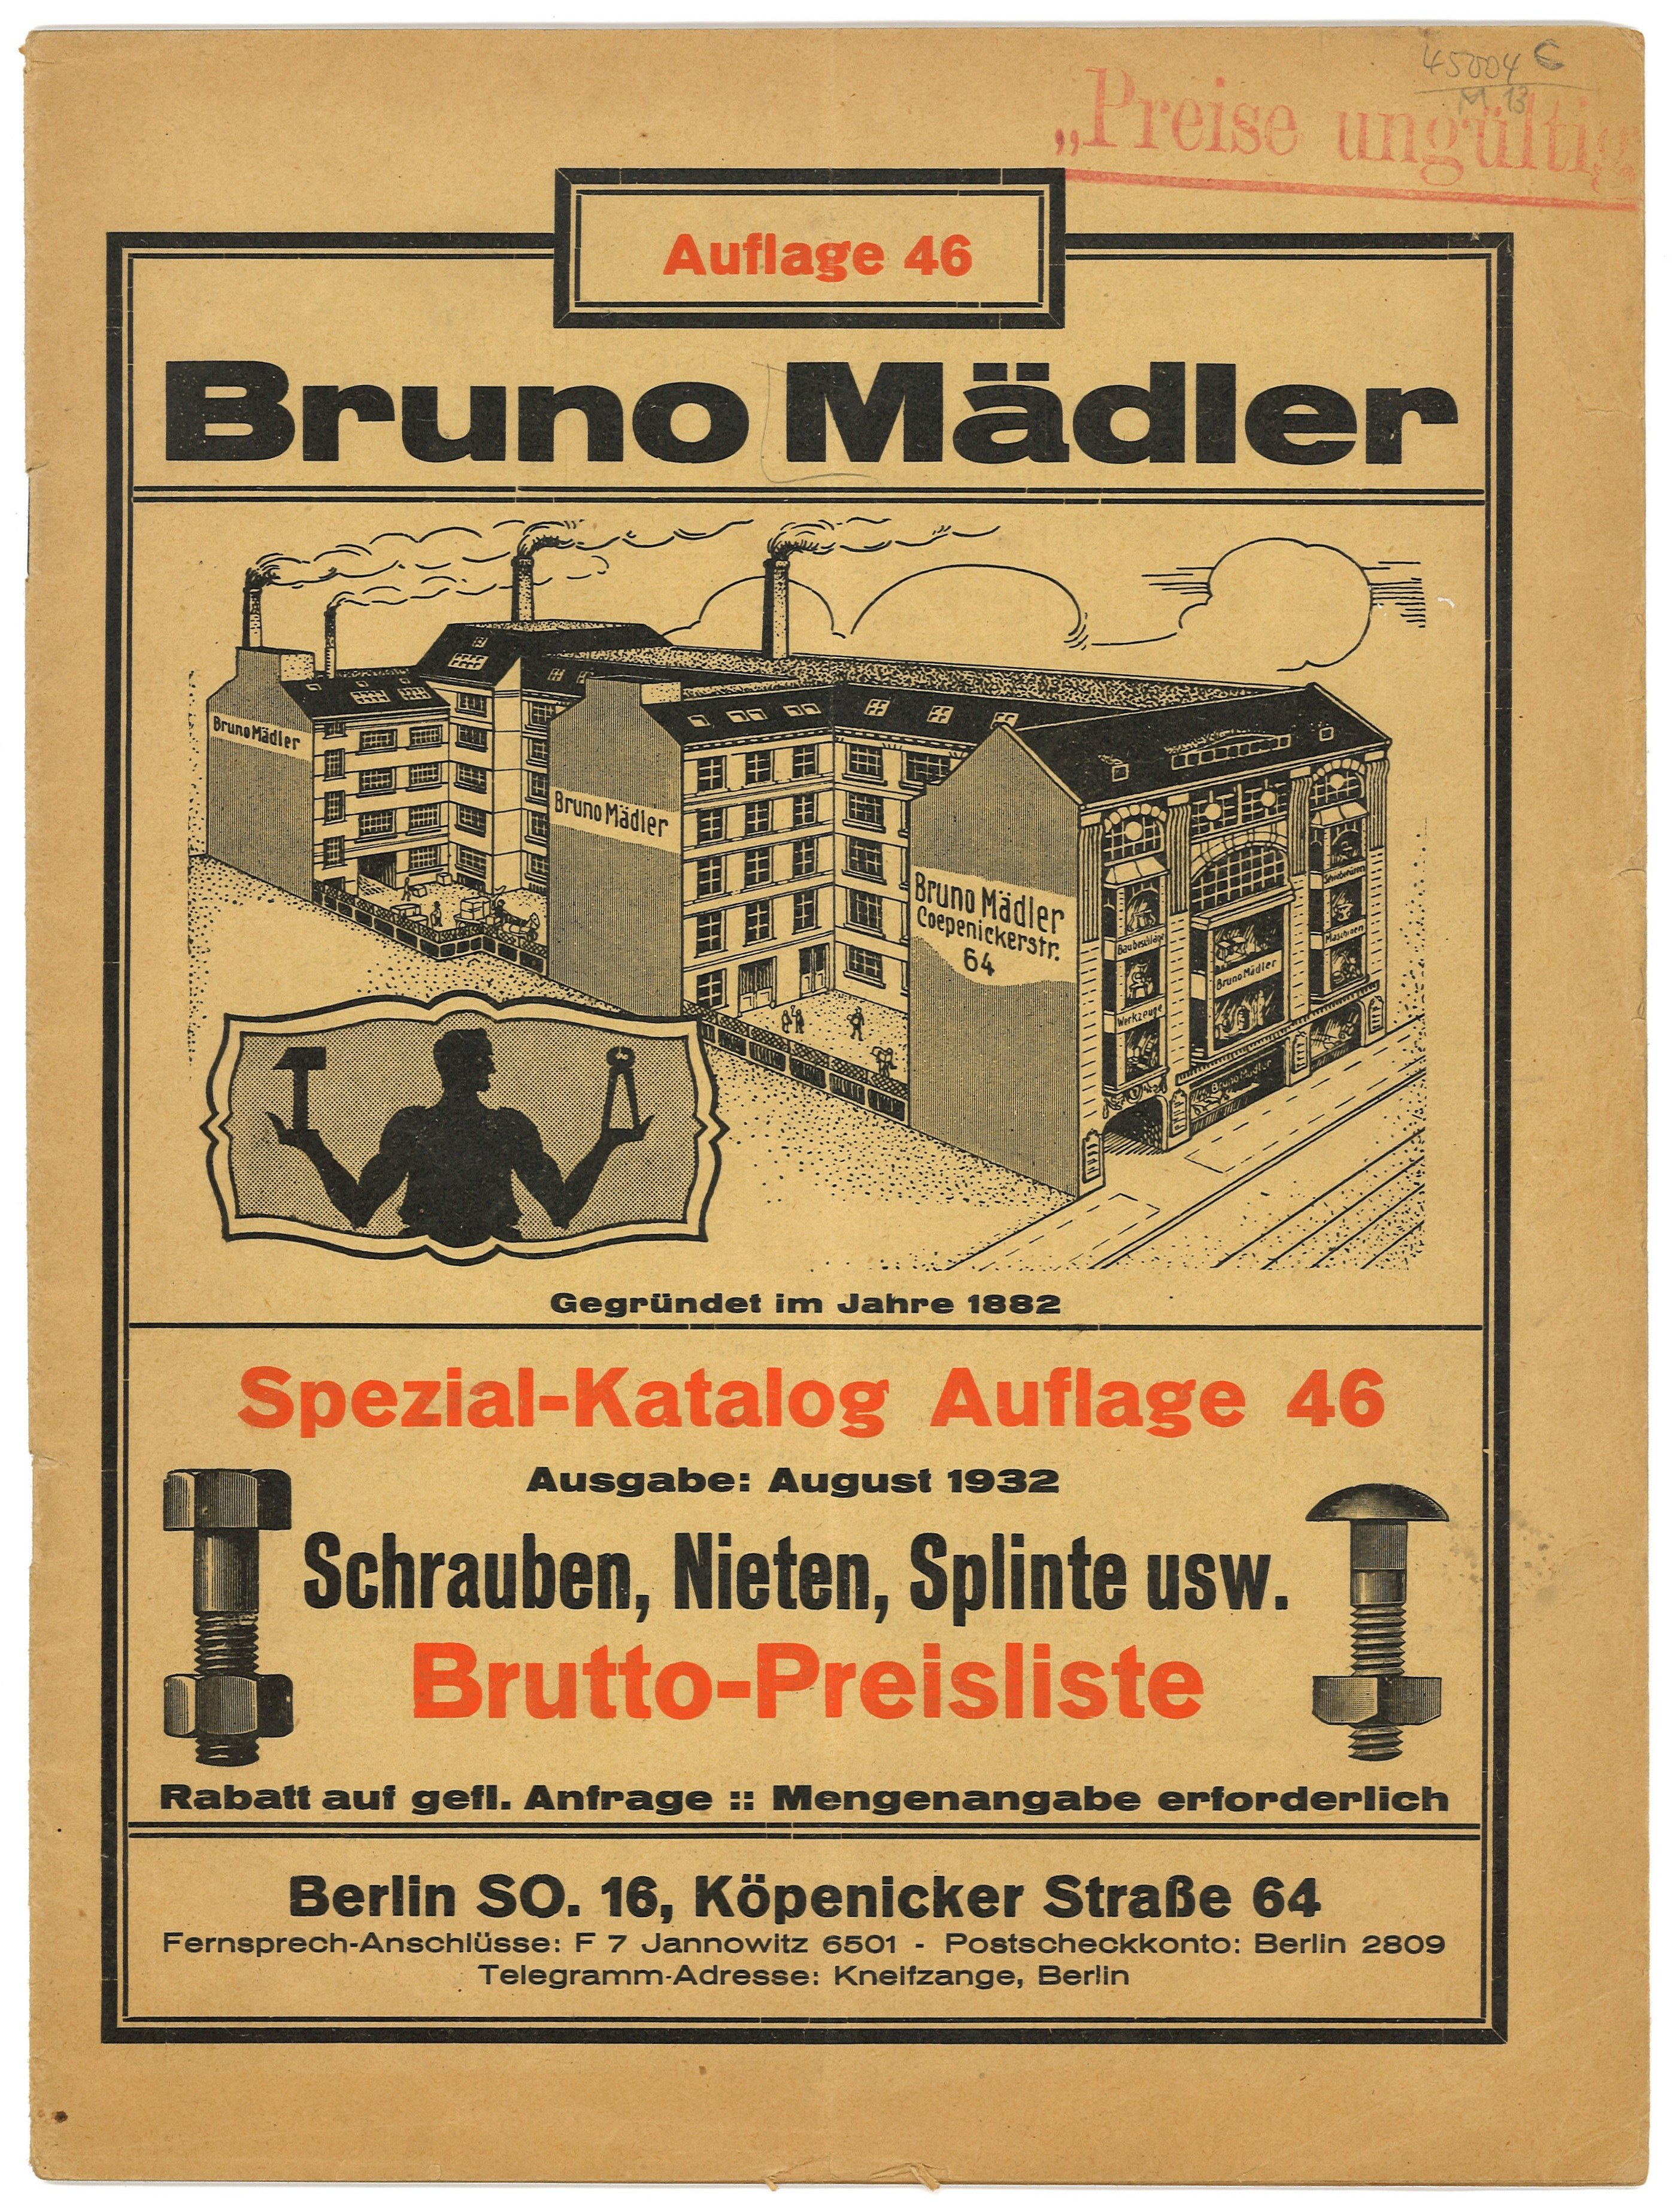 Werkzeugfabrik Bruno Mädler, Berlin: Spezial-Katalog Auflage 46 (1932) (Landesgeschichtliche Vereinigung für die Mark Brandenburg e.V., Archiv CC BY)